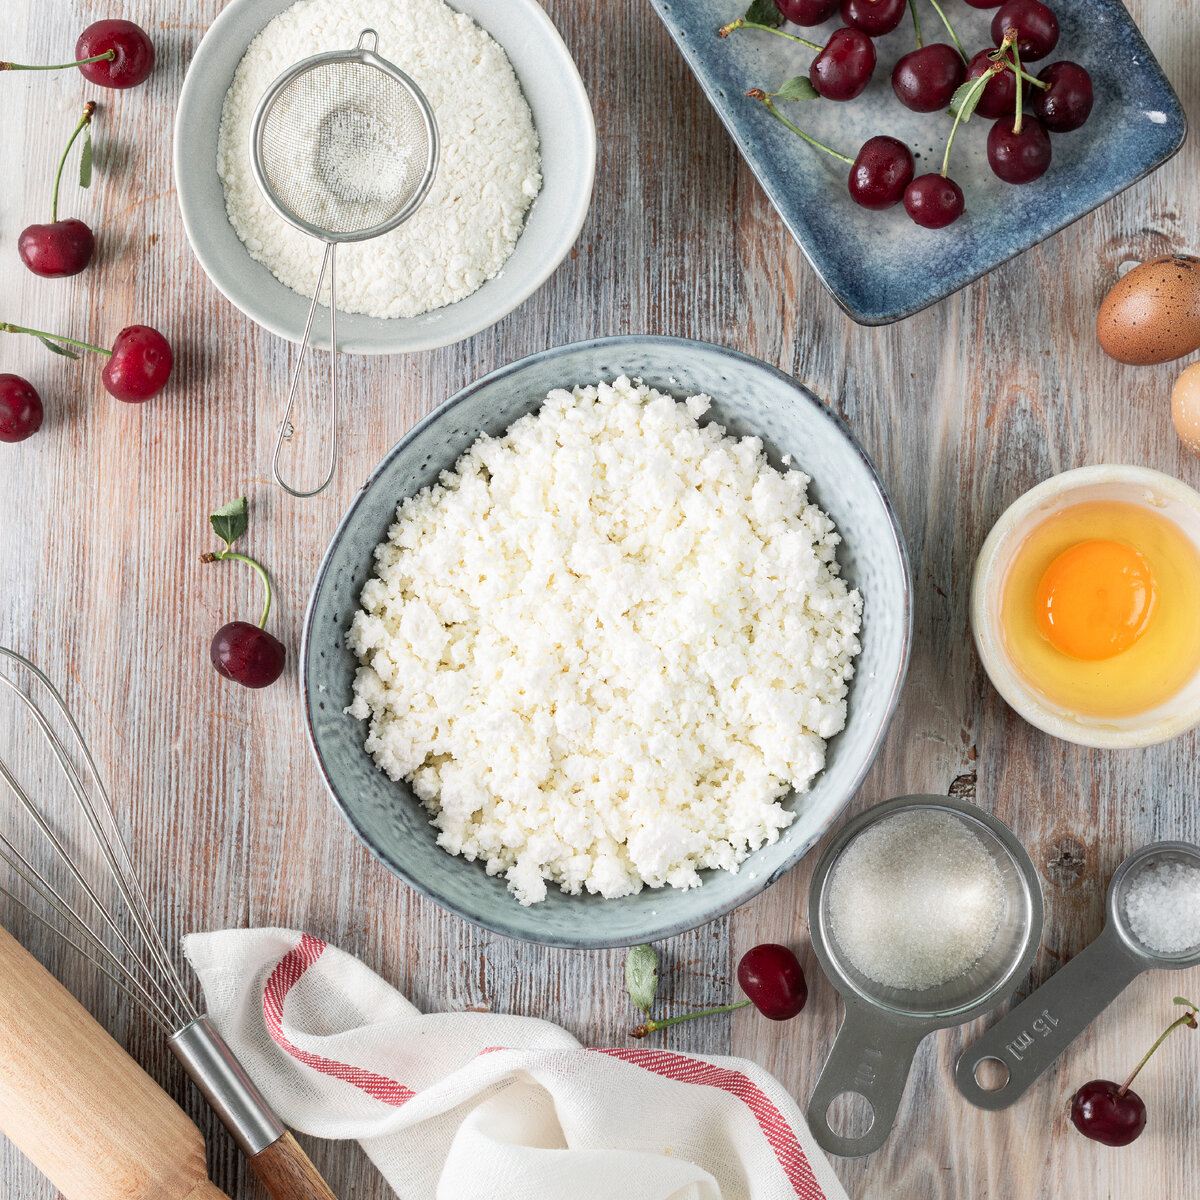  Мы подготовили для вас рецепт не только вкусного, но и полезного завтрака – сырники в духовке ⬇

Вам понадобится:

🔸Творог – 250 гр.
🔸Яйцо – 1 шт.
🔸Мука – 2 ст. л.
🔸Сахар – 1 ст.л.